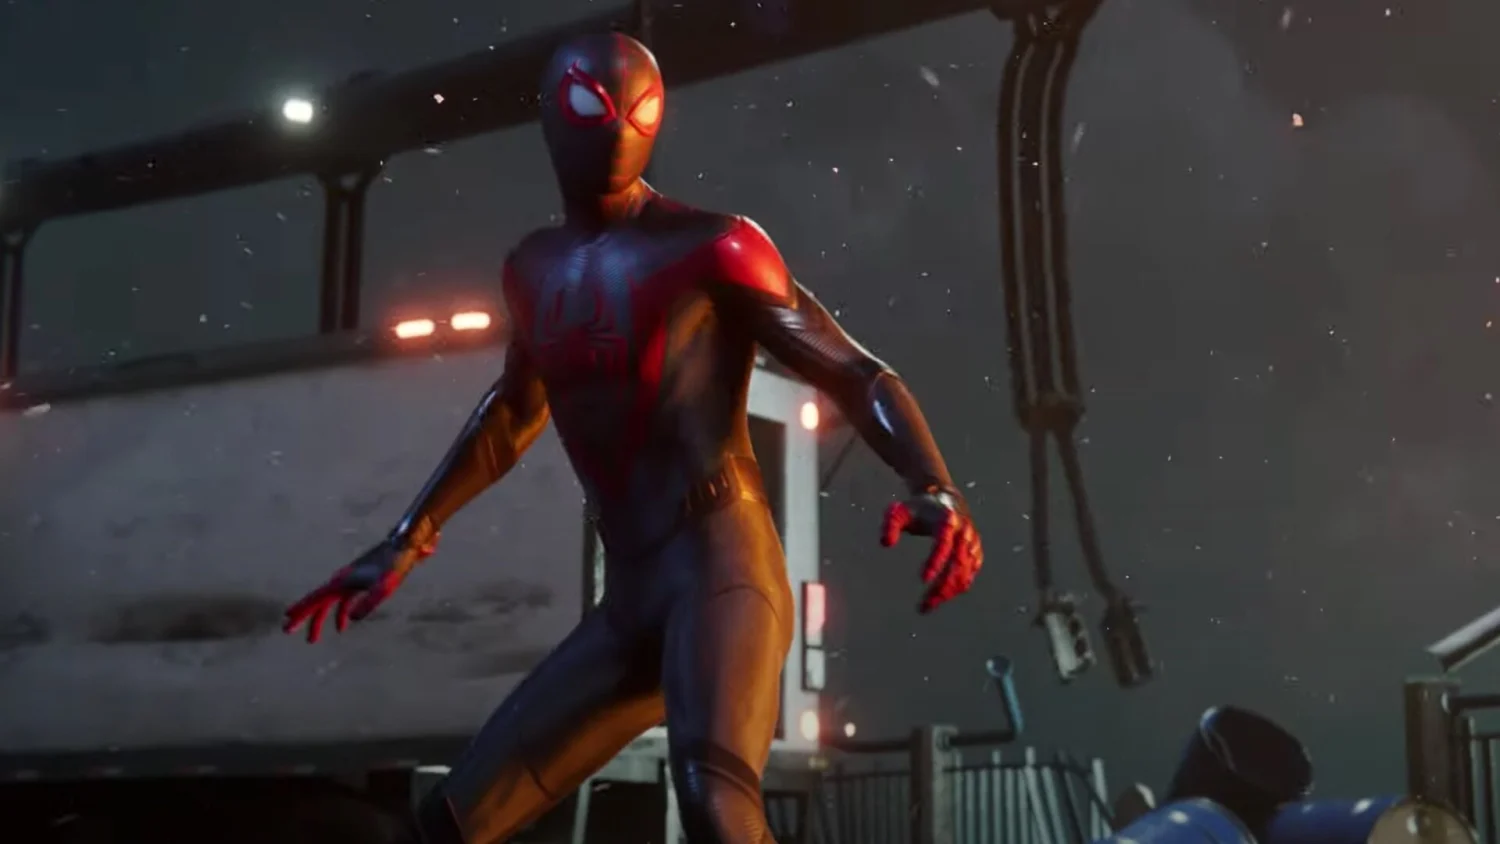 Jogo Marvel's Spider-Man 2 para PS5 no Paraguai - Atacado Games